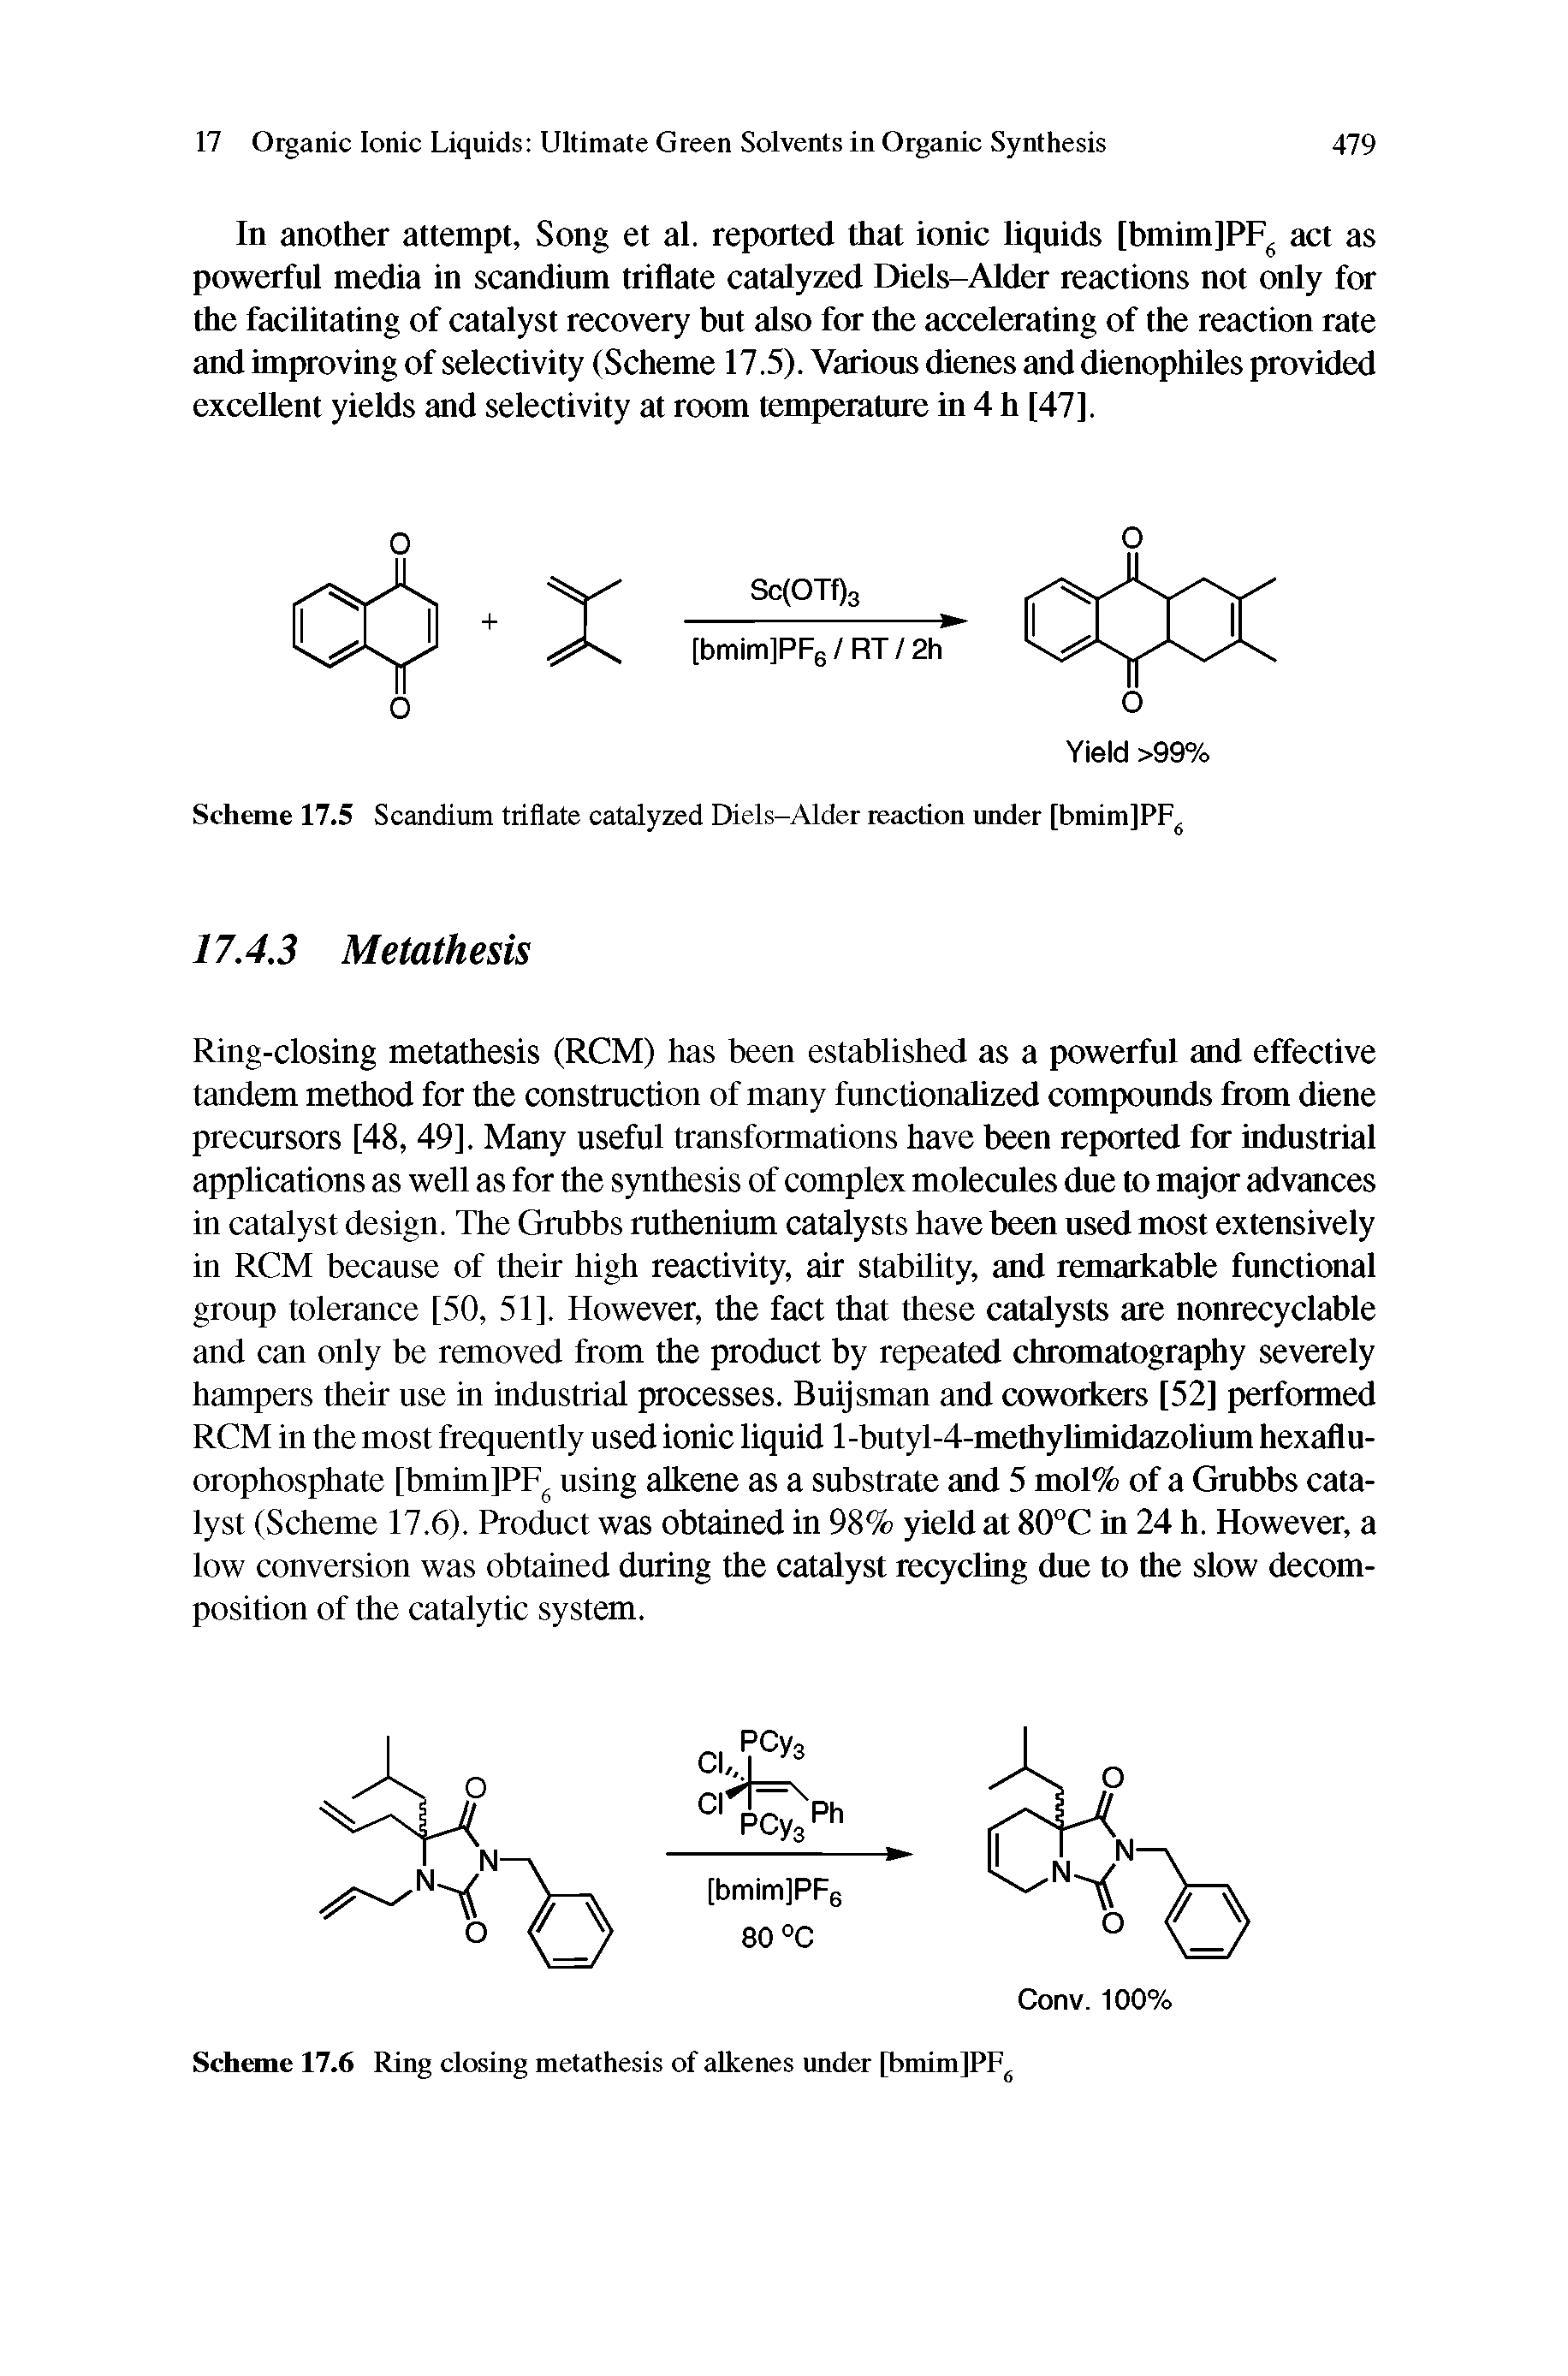 Scheme 17.5 Scandium triflate catalyzed Diels-Alder reaction under [bmim]PF ...